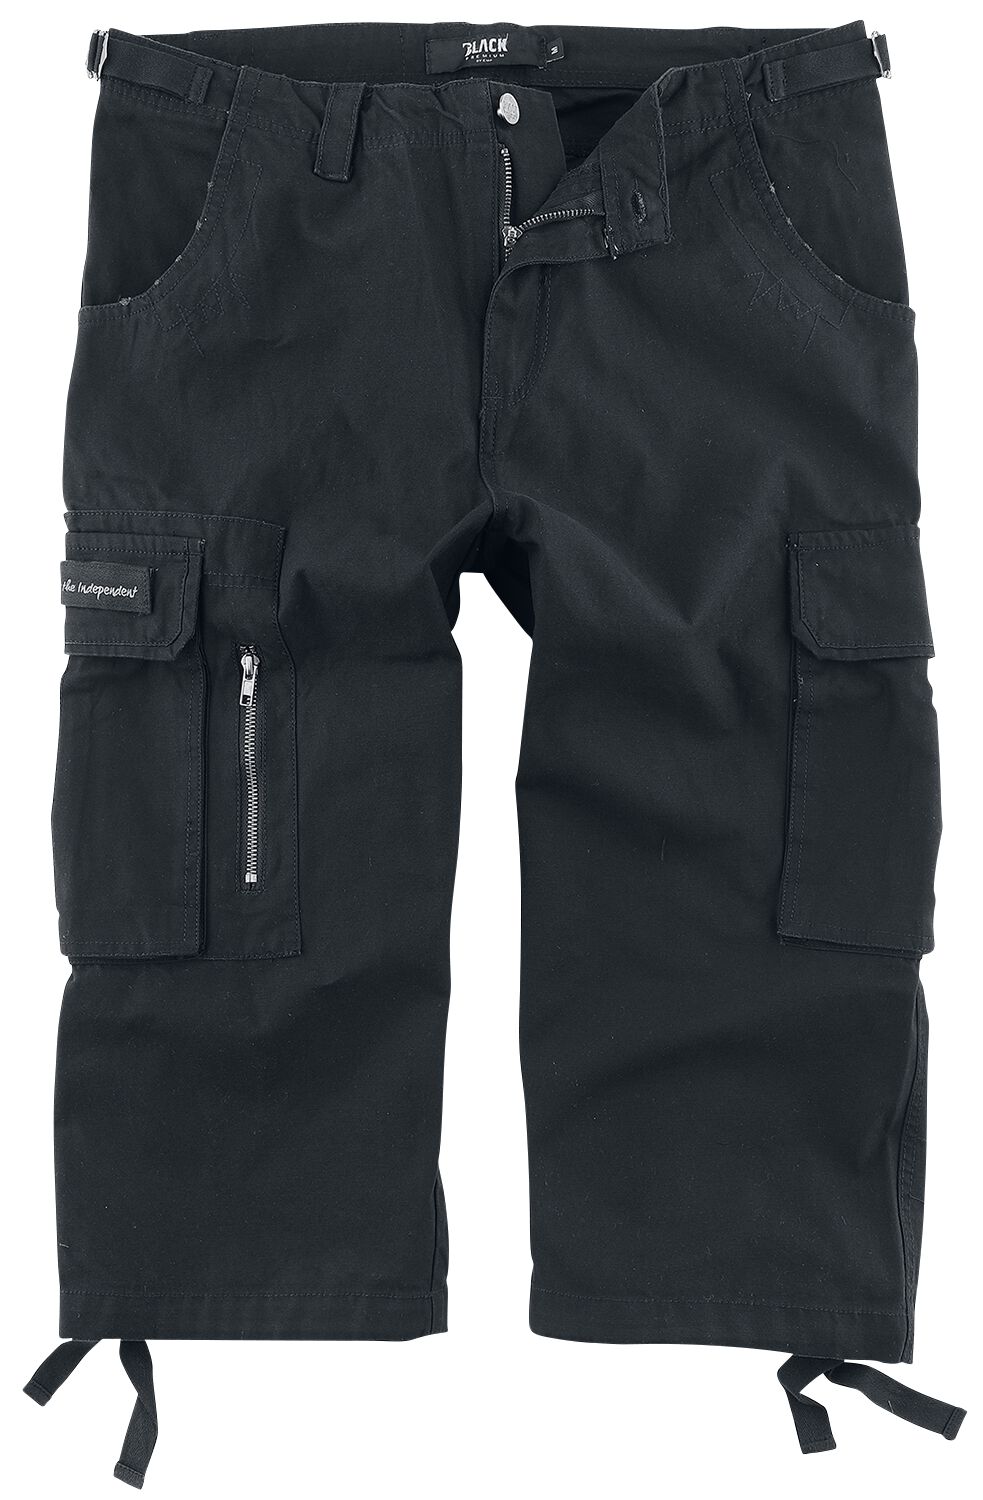 Black Premium by EMP 3/4 Army Vintage Shorts Short schwarz in L